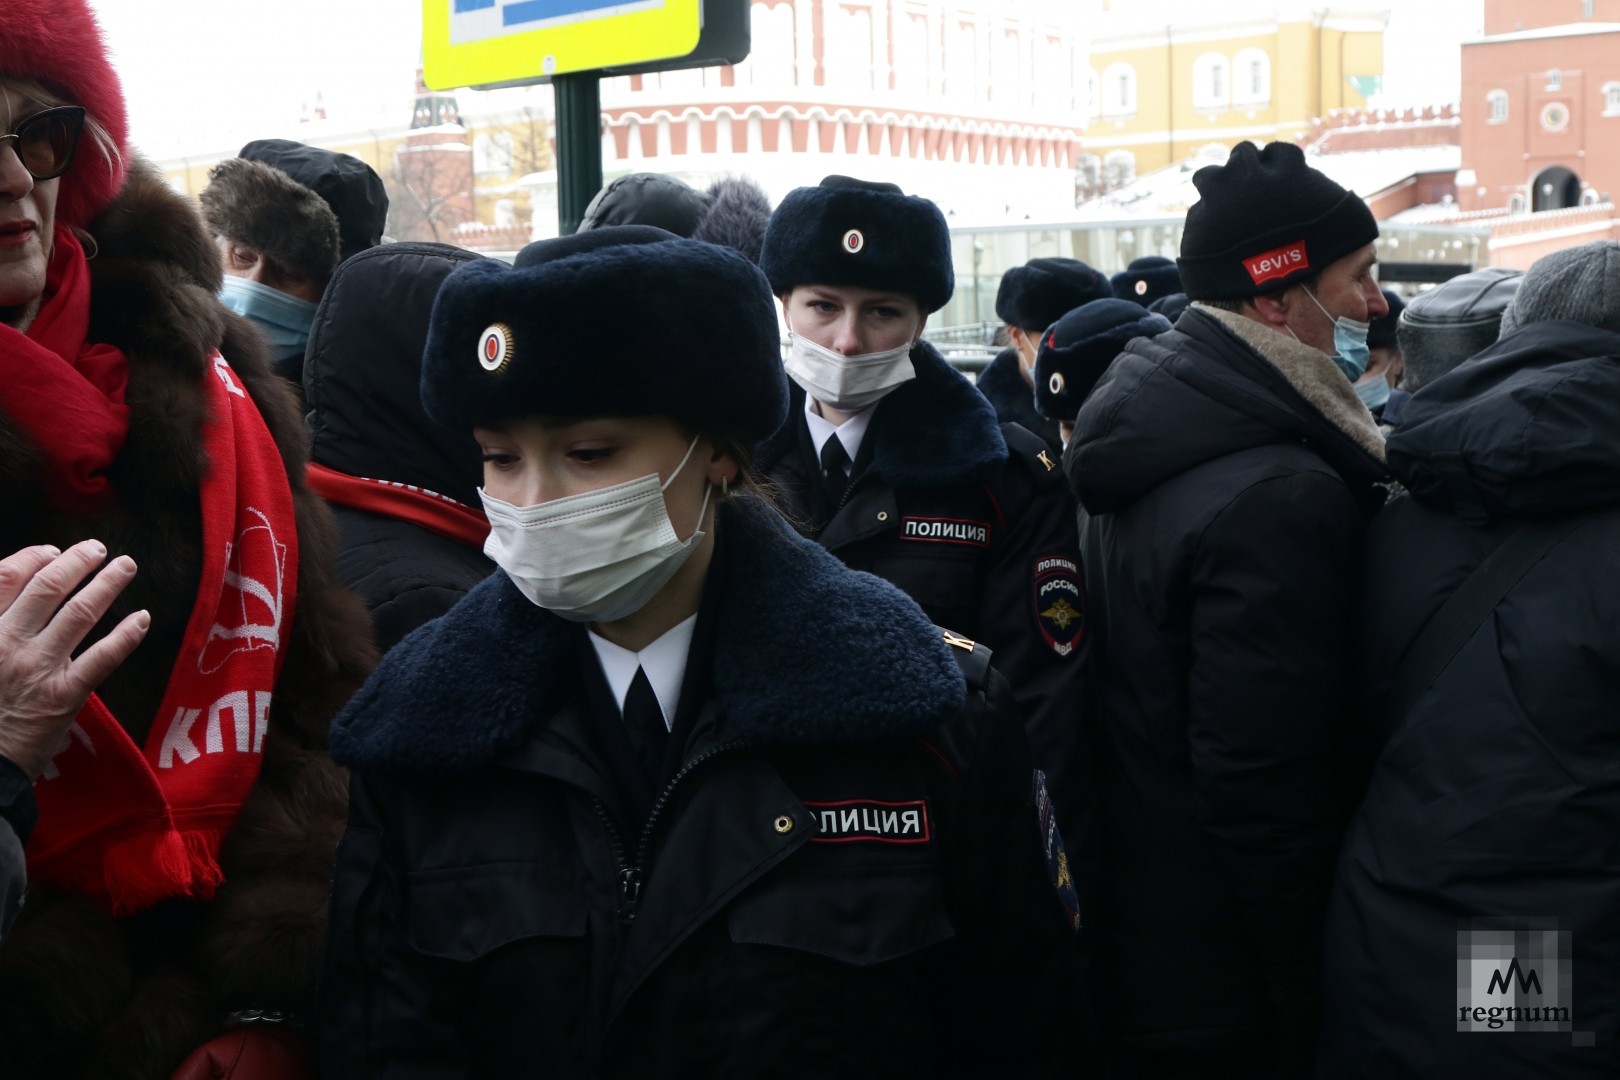 Митинг в москве 17 февраля. Полицейские на митинге в Москве. КПРФ митинг 23 февраля. Девушки полицейские на митинге.